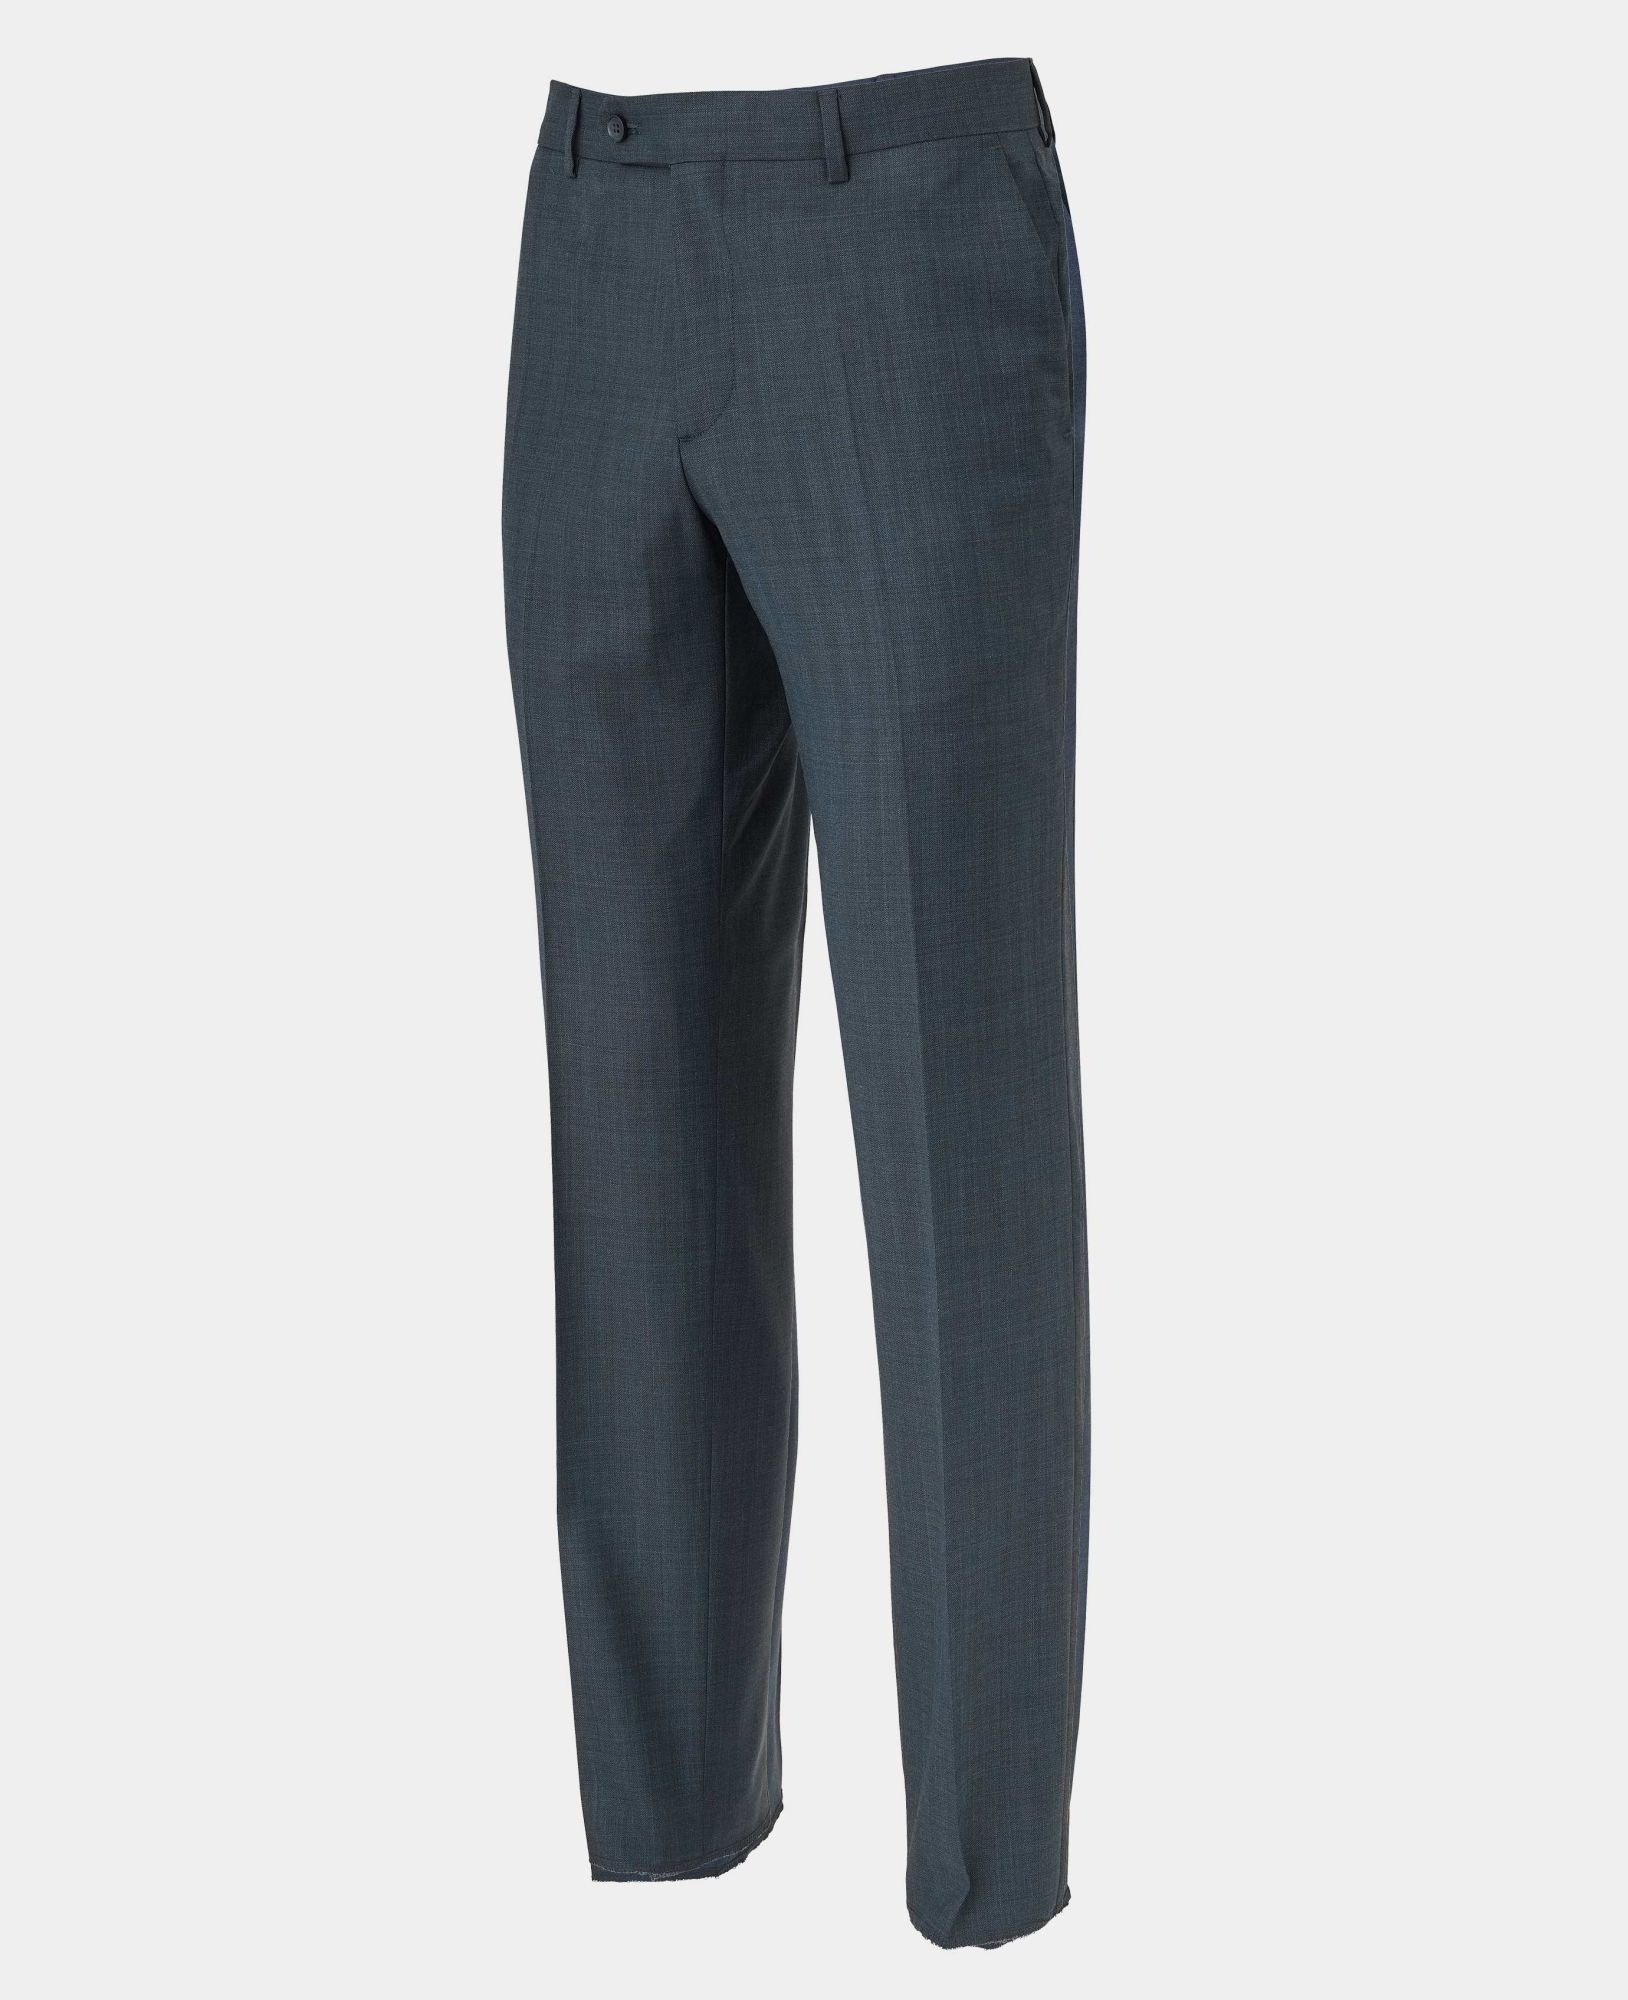 Navy Herringbone Wool-Blend Suit Trousers 34